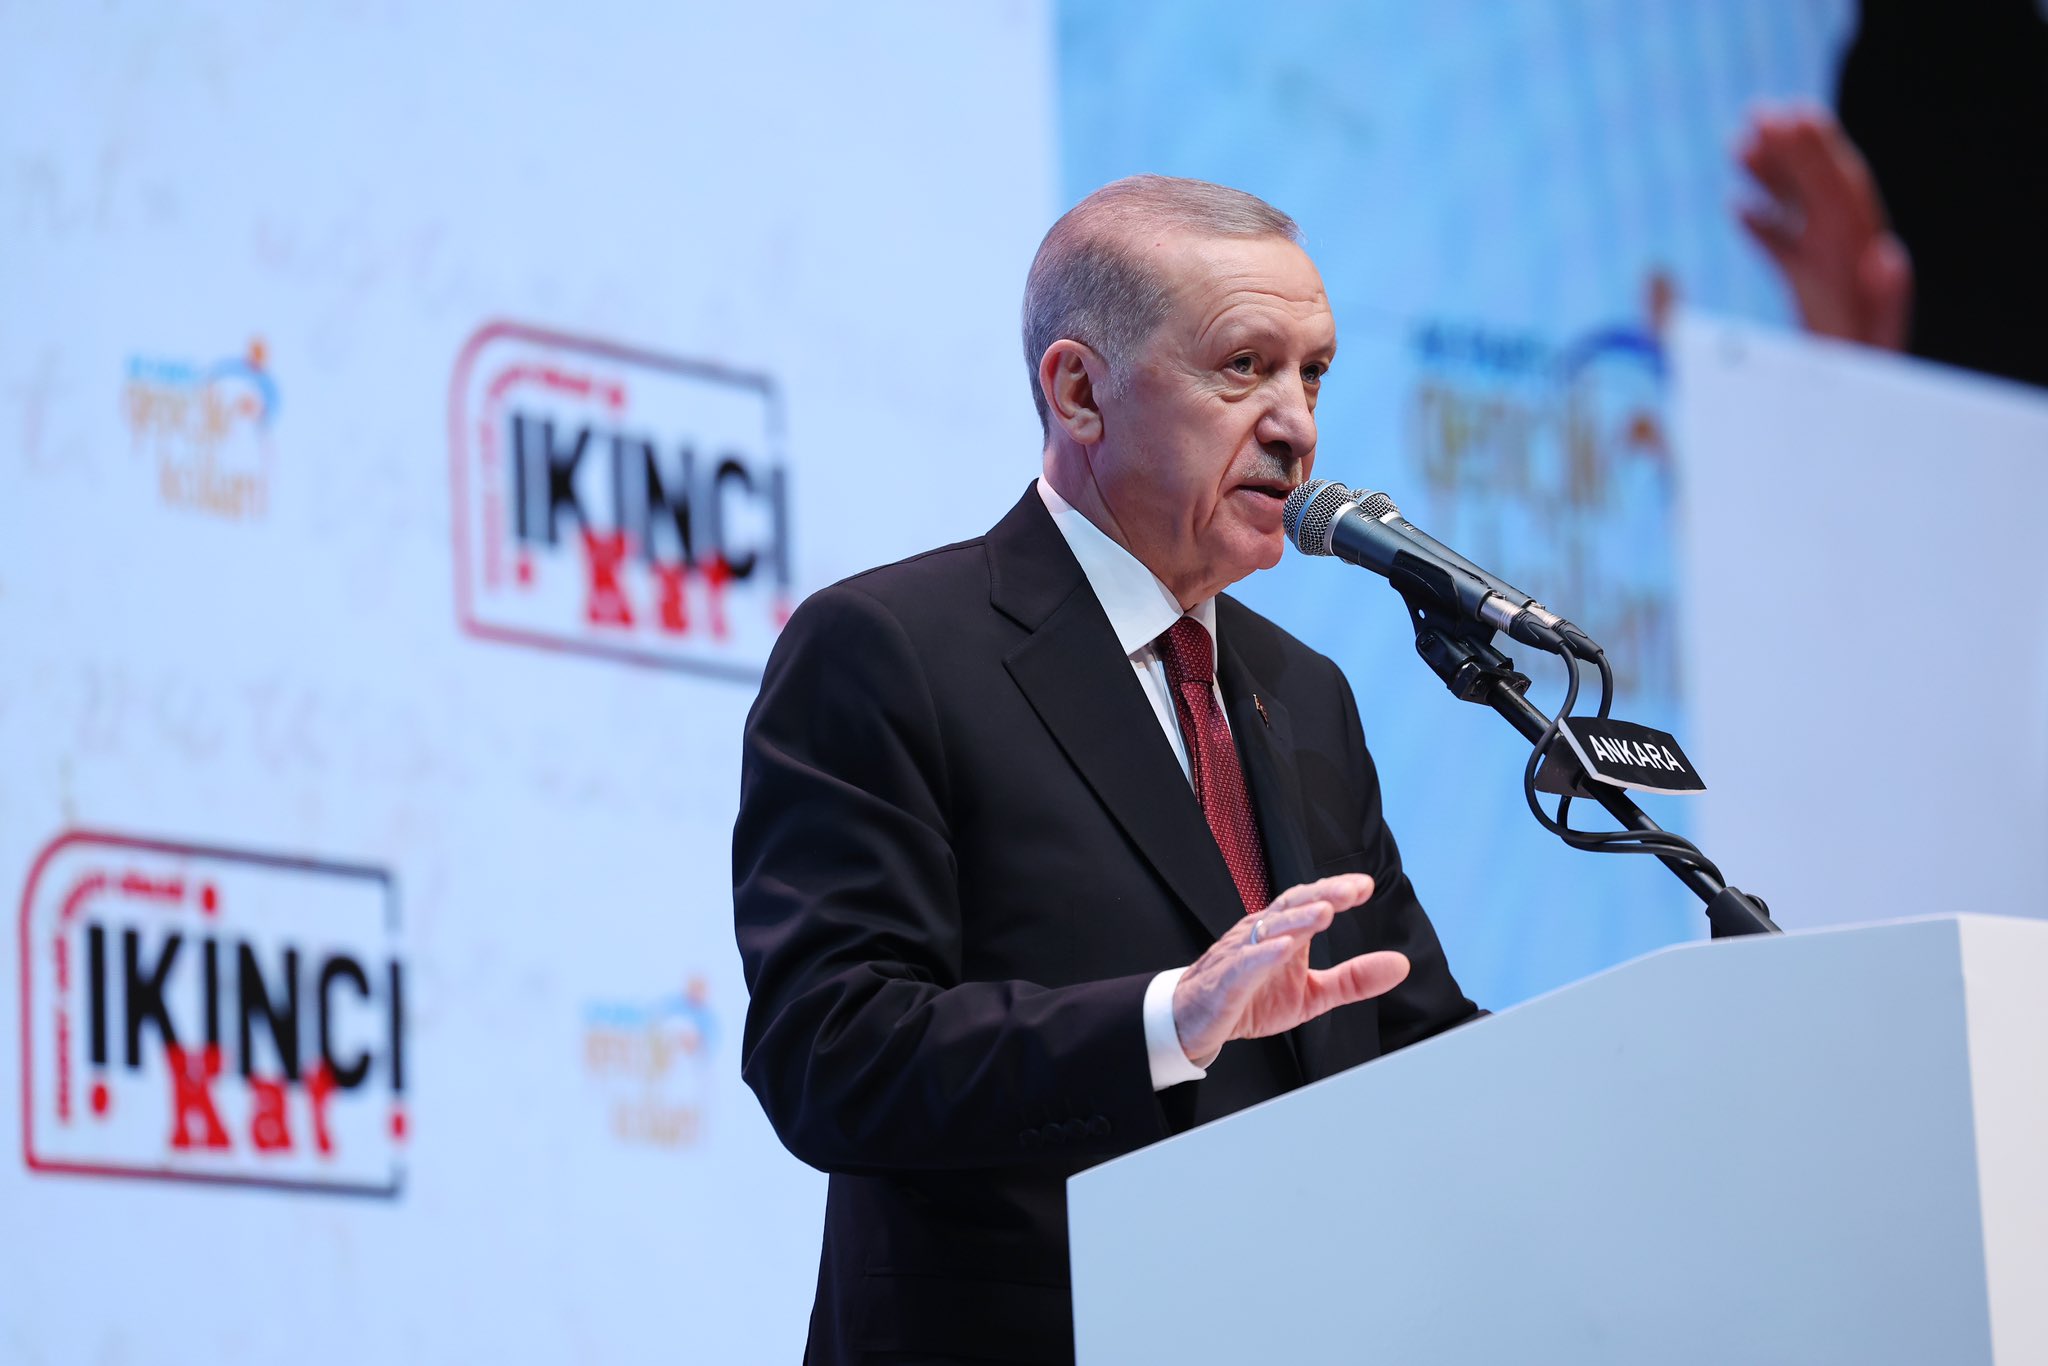 Erdoğan: Teröristle aynı dili konuşan, terörist gibi muamele görmekten kaçamaz